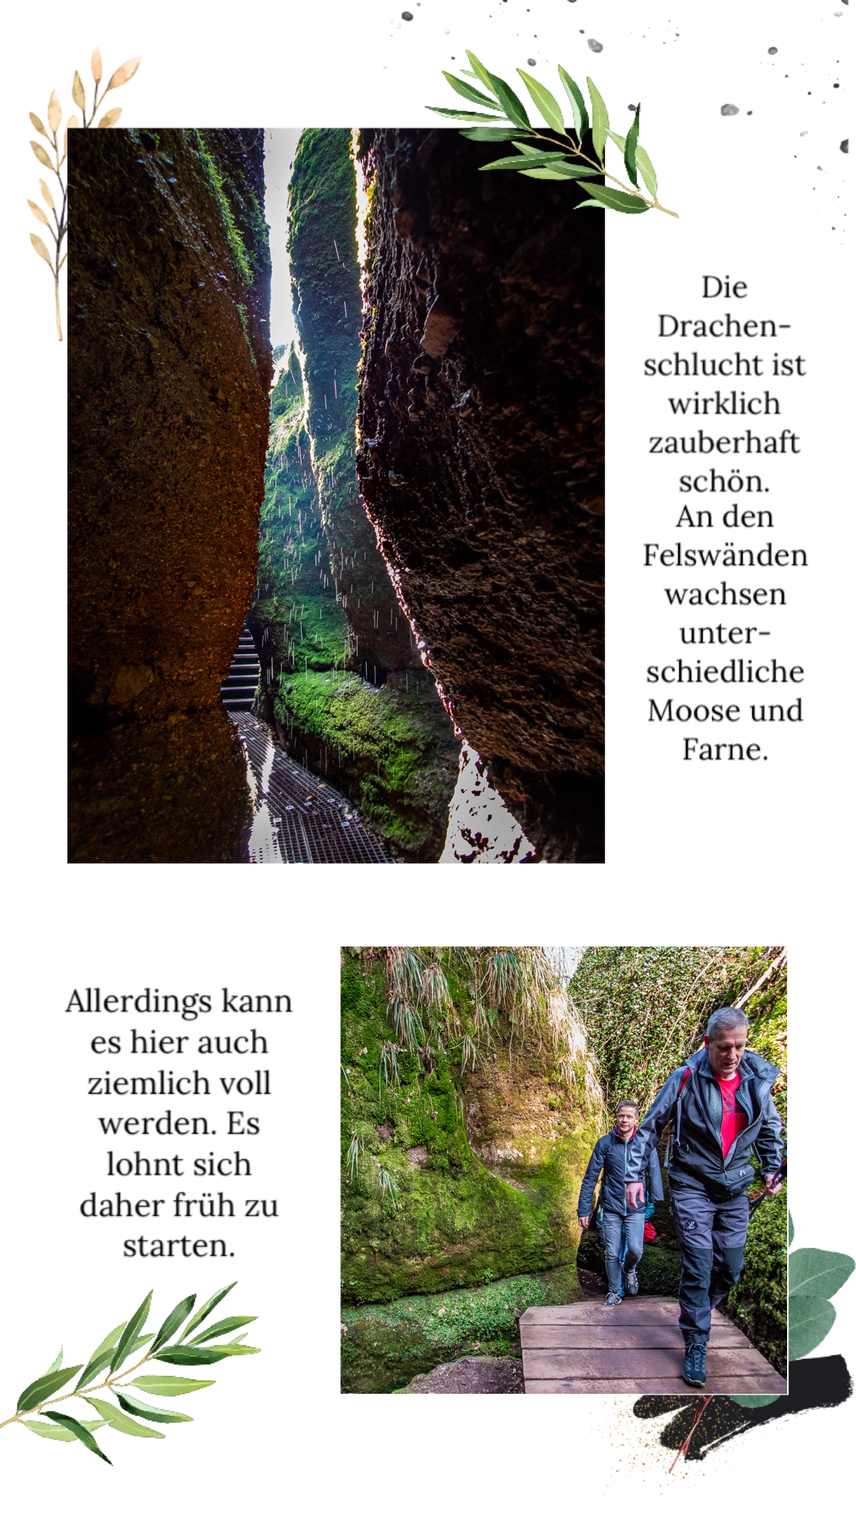 Abwechslungsreiche Wanderung im Mittelgebirge Thüringer Wald - durch die Drachenschlucht, hinauf zur Wartburg und durch die Landgrafenschlucht. Diese Tour muss du unbedingt einmal gemacht haben.